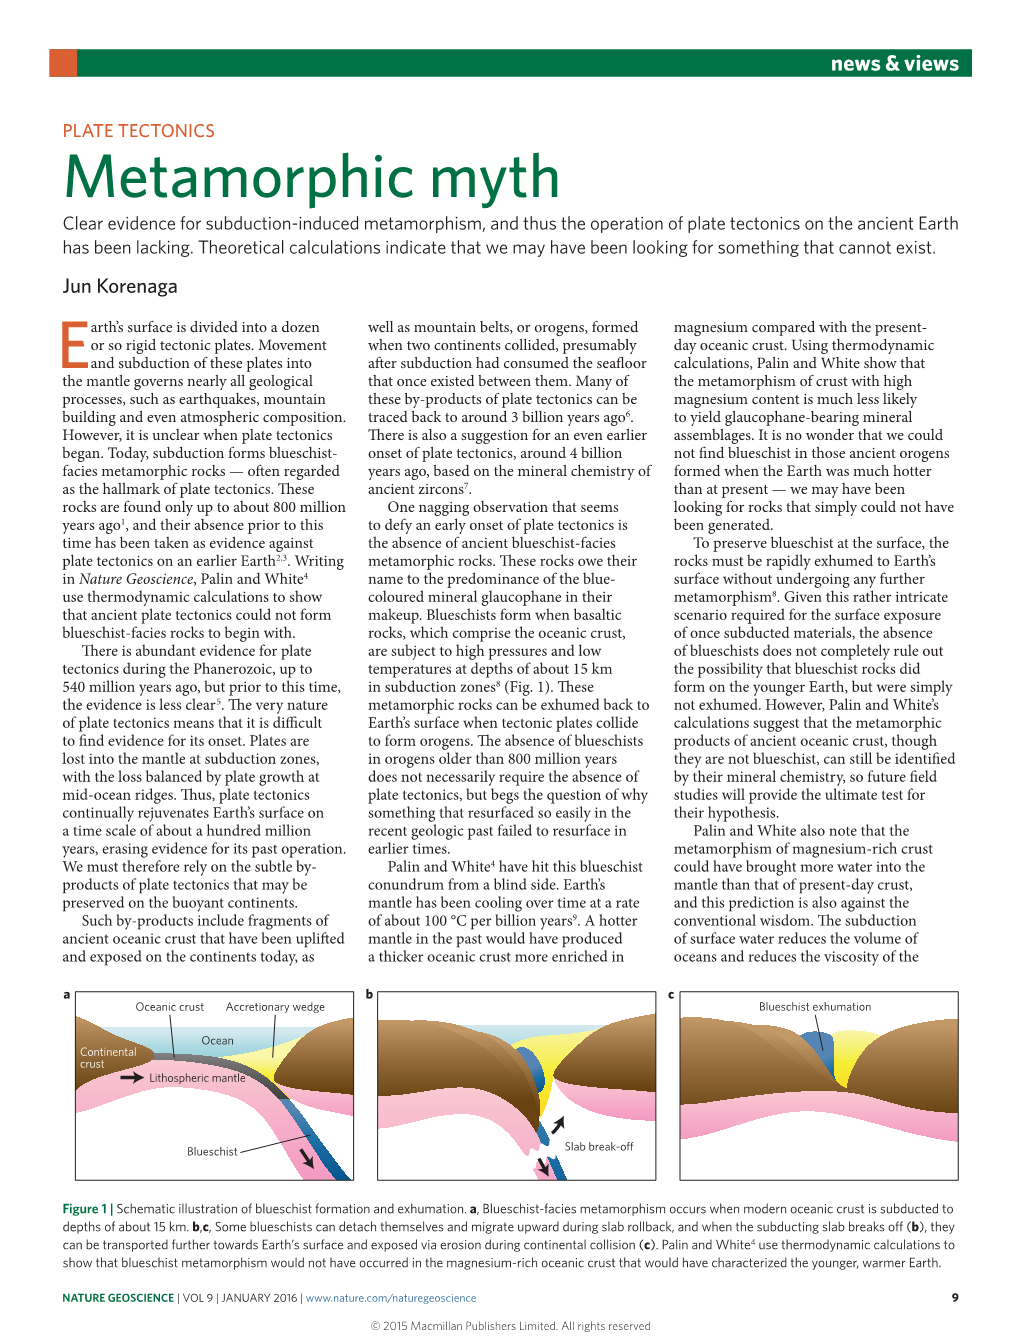 Plate Tectonics: Metamorphic Myth